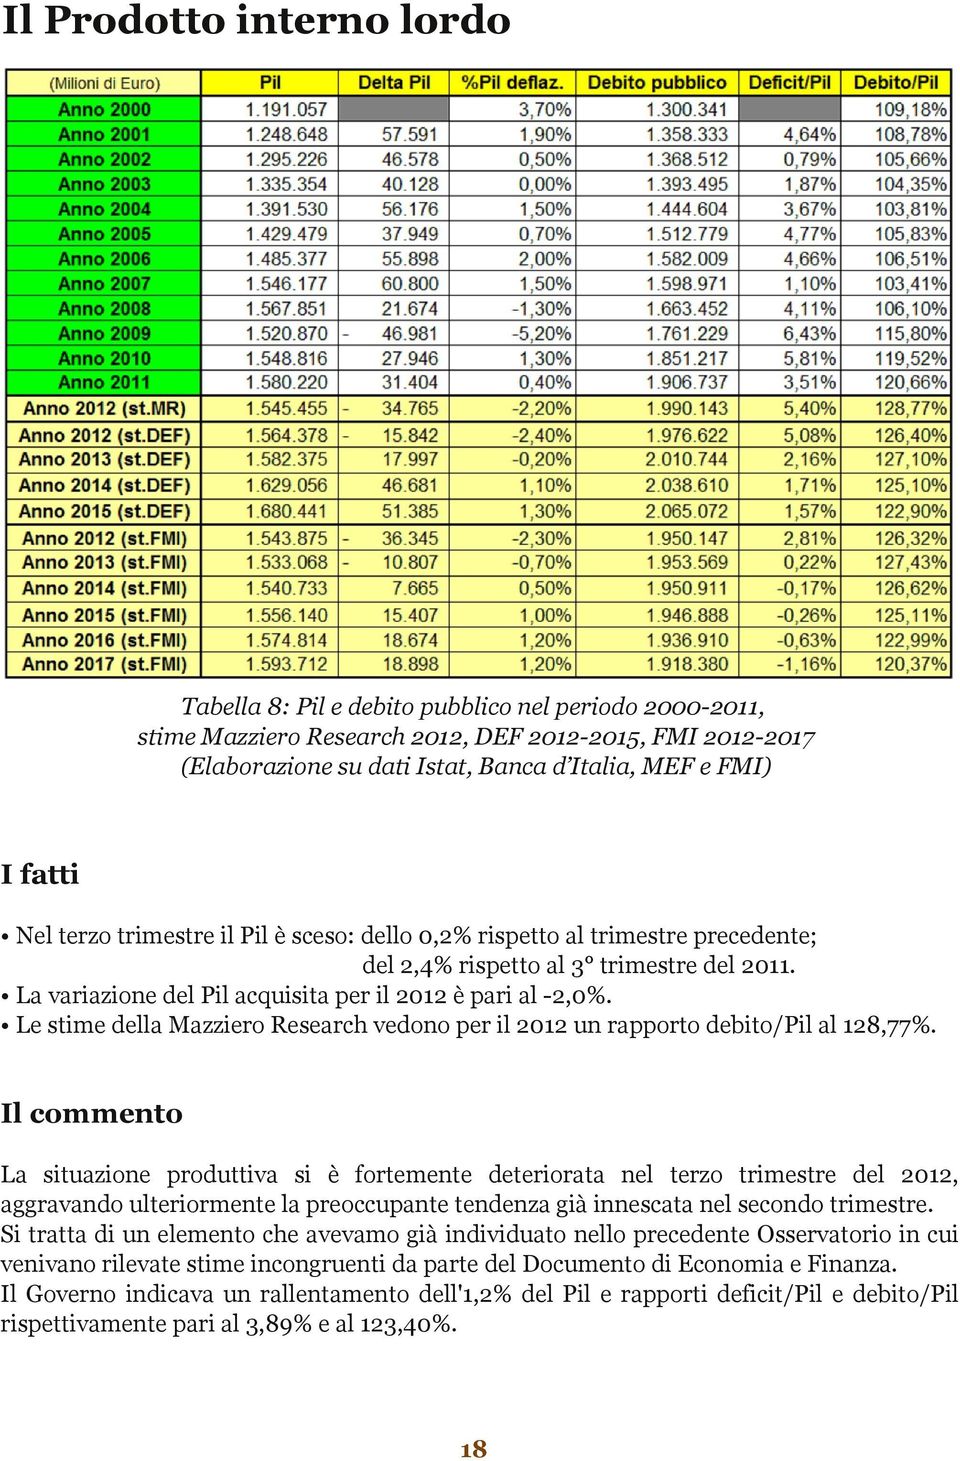 Le stime della Mazziero Research vedono per il 2012 un rapporto debito/pil al 128,77%.